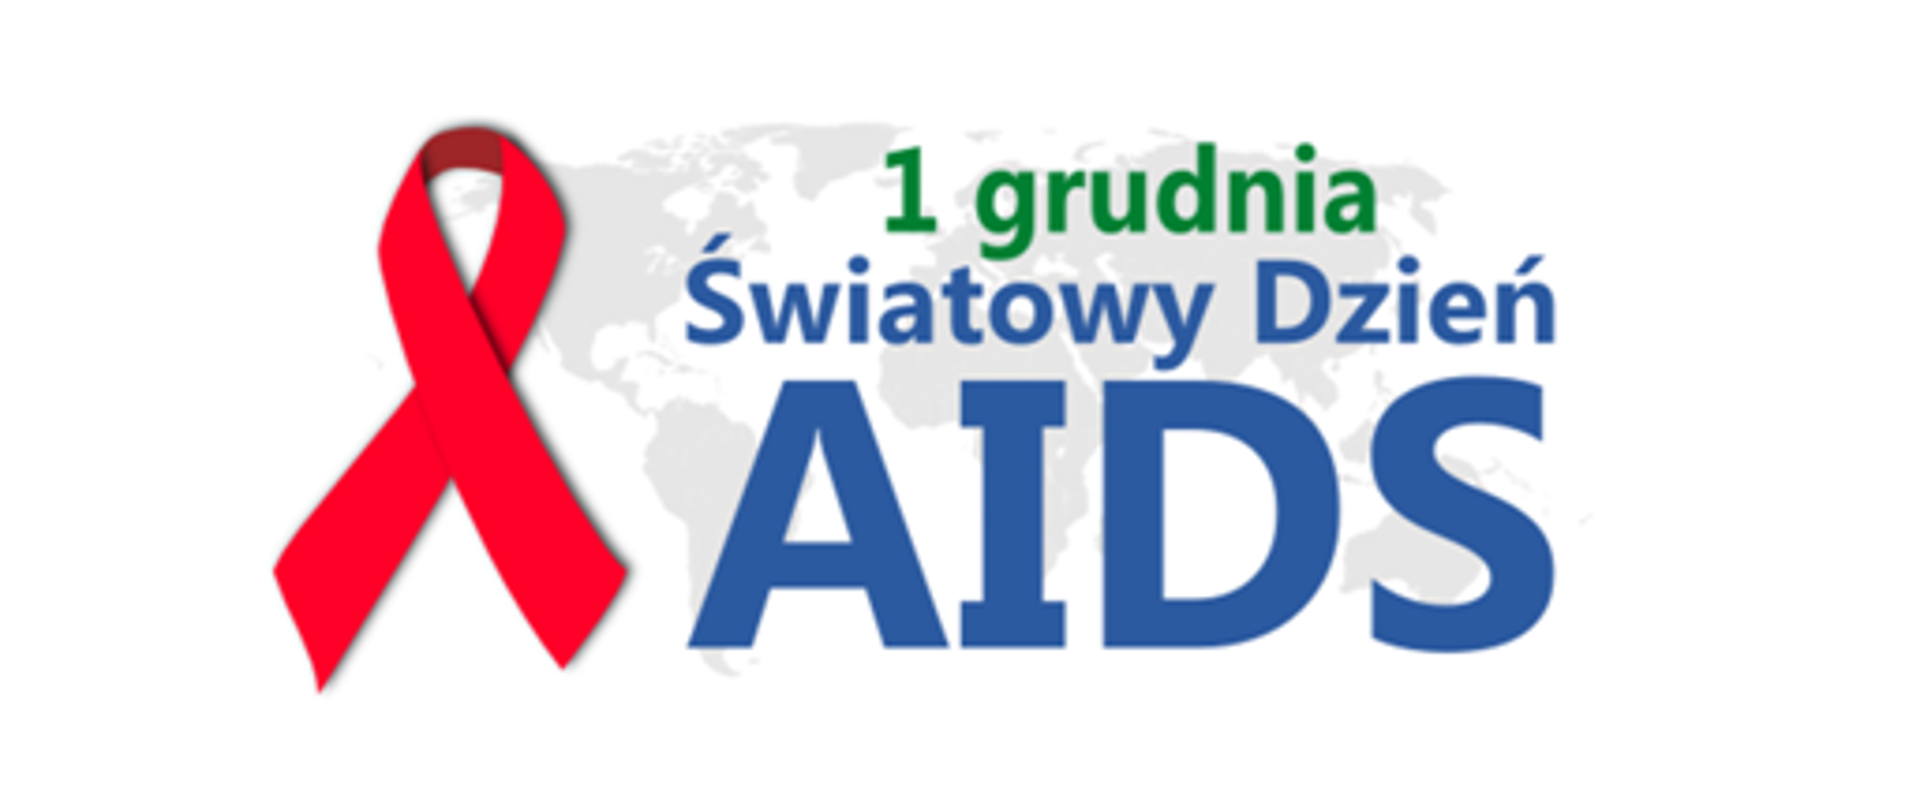 Grafika przedstawia czerwoną kokardkę oraz napis 1 grudnia Światowy Dzień AIDS